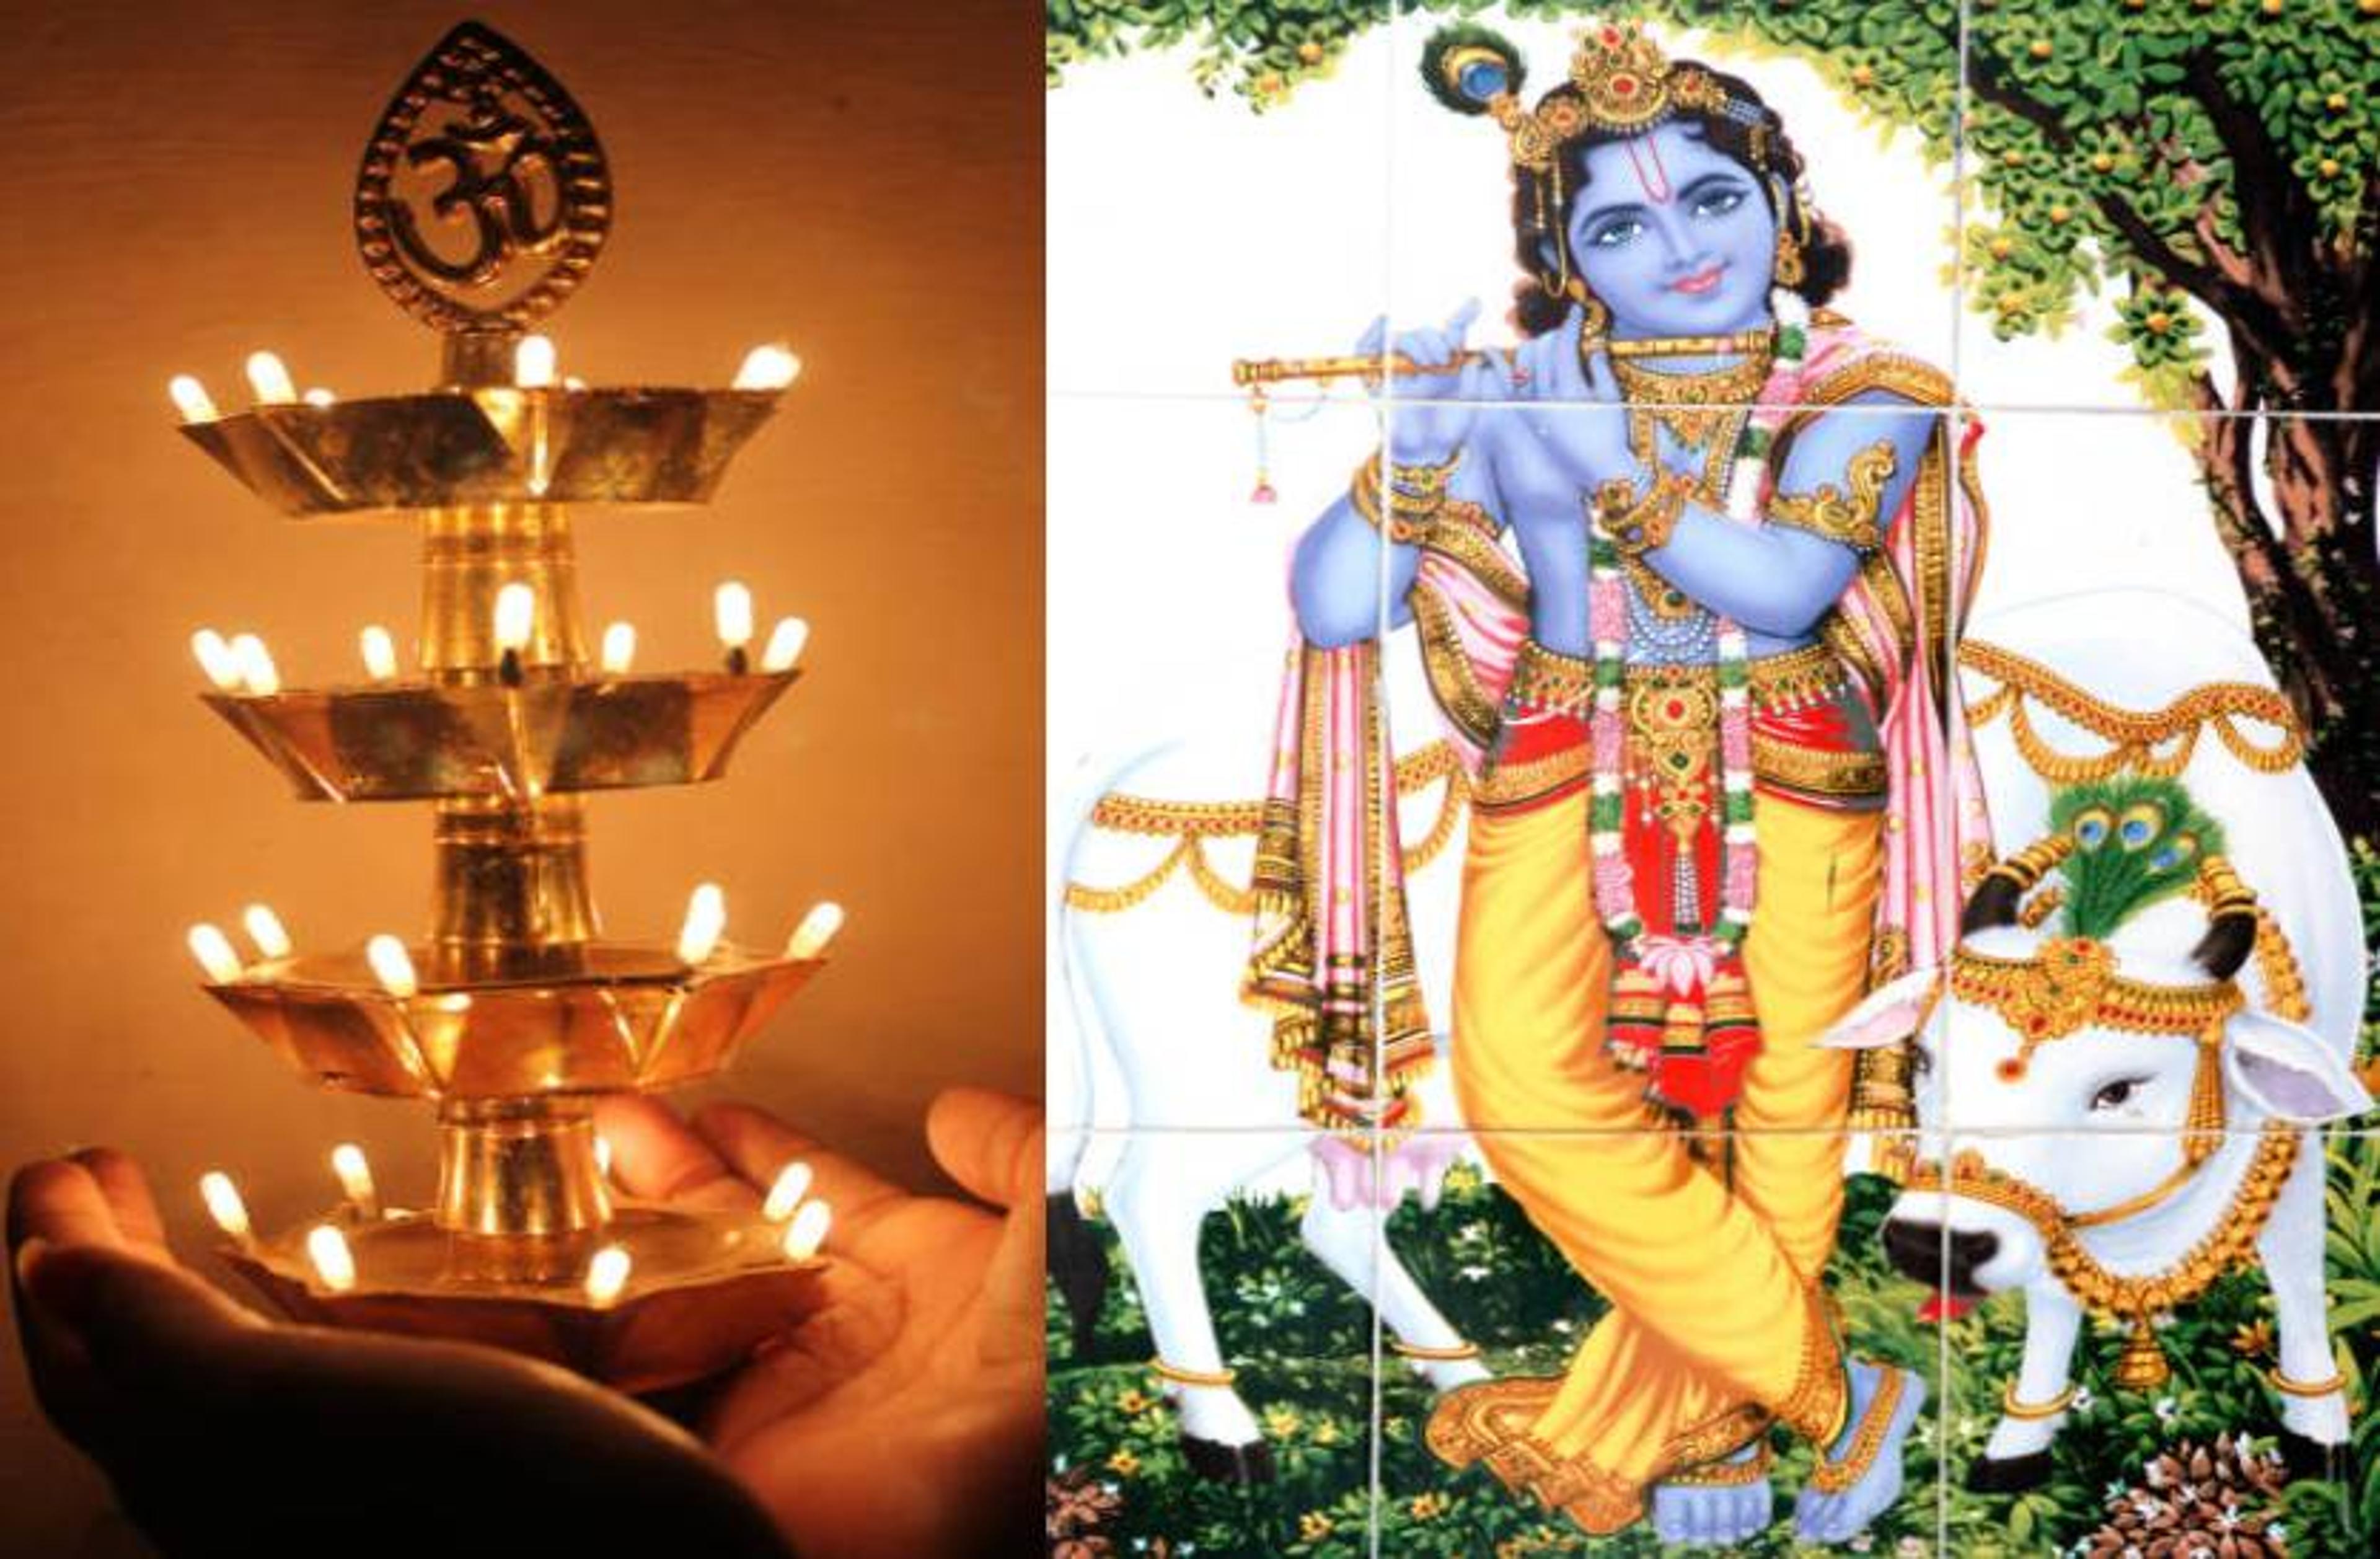 Govardhan Puja: दो घंटे का है अन्नकूट पूजा मुहूर्त, जानिए सही तिथि पूजा विधि और
महत्व